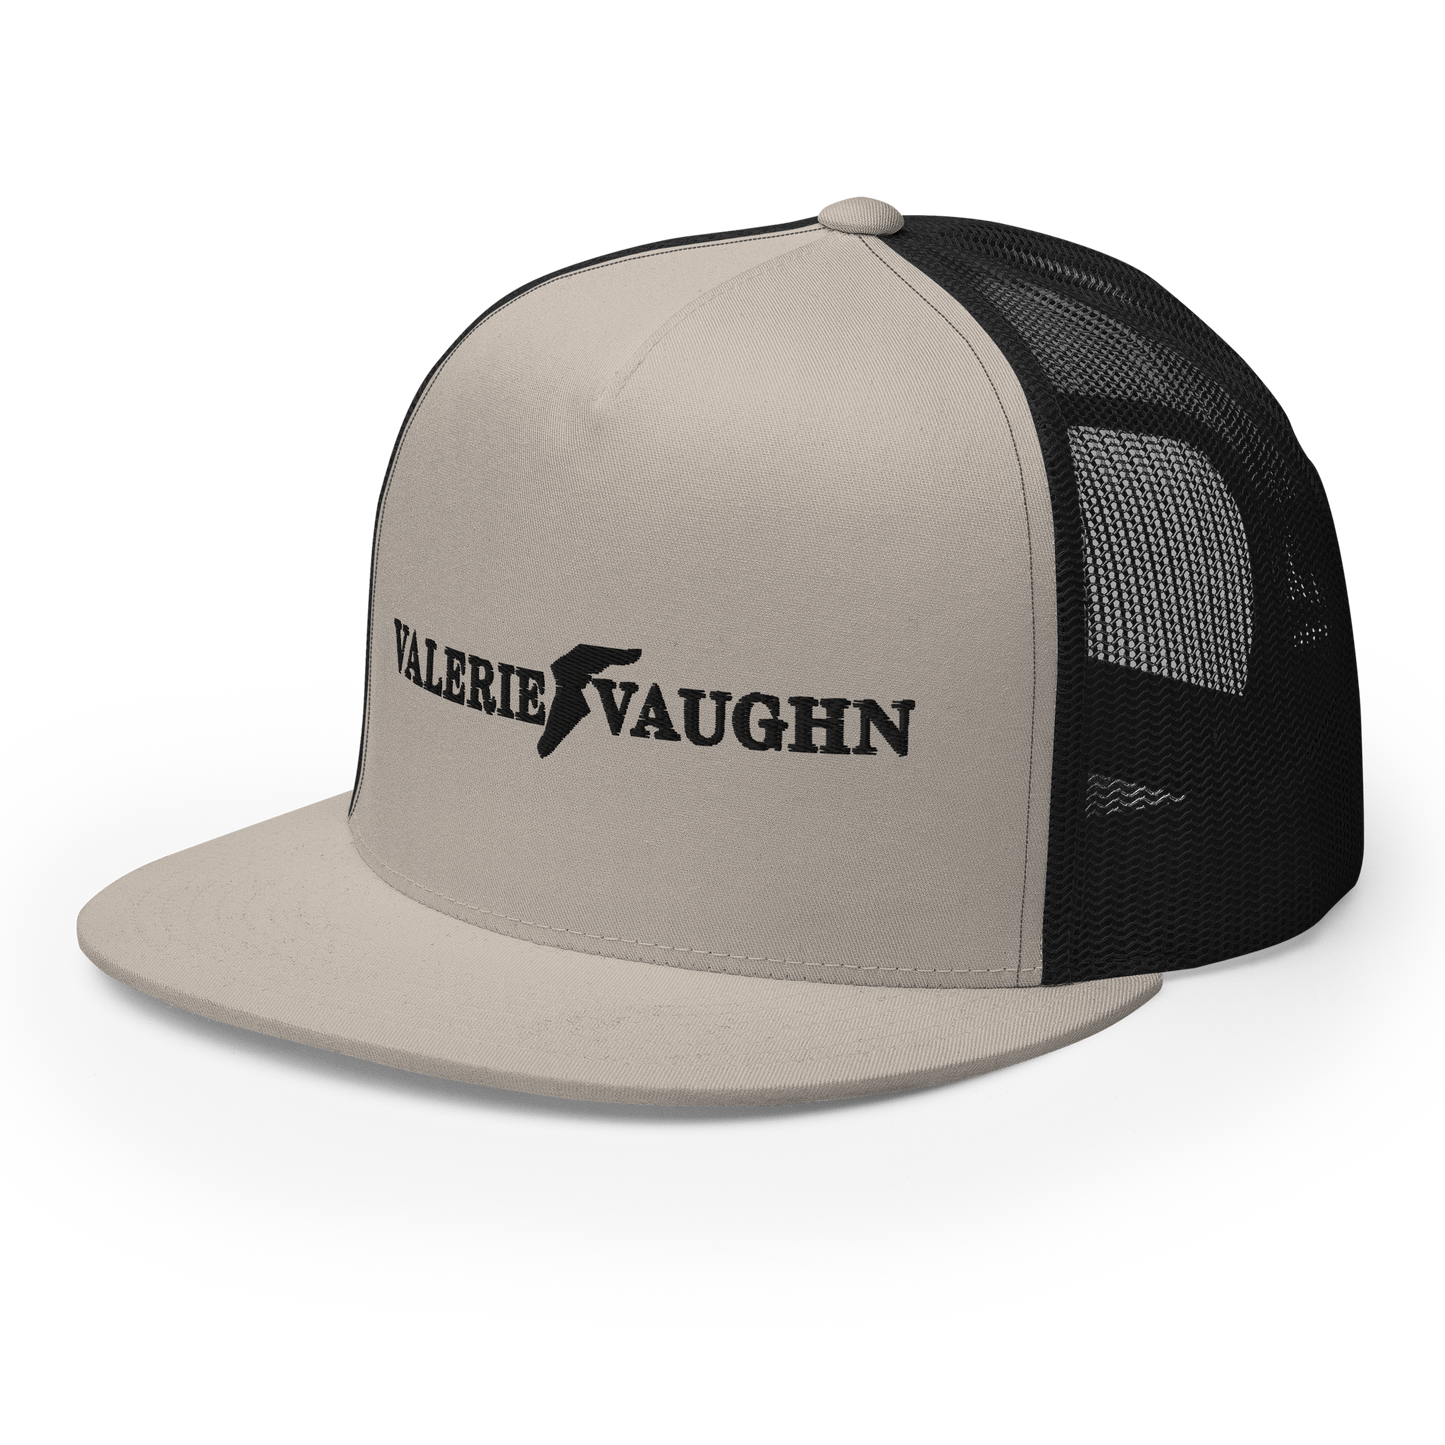 Valerie Vaughn Good Year Hat